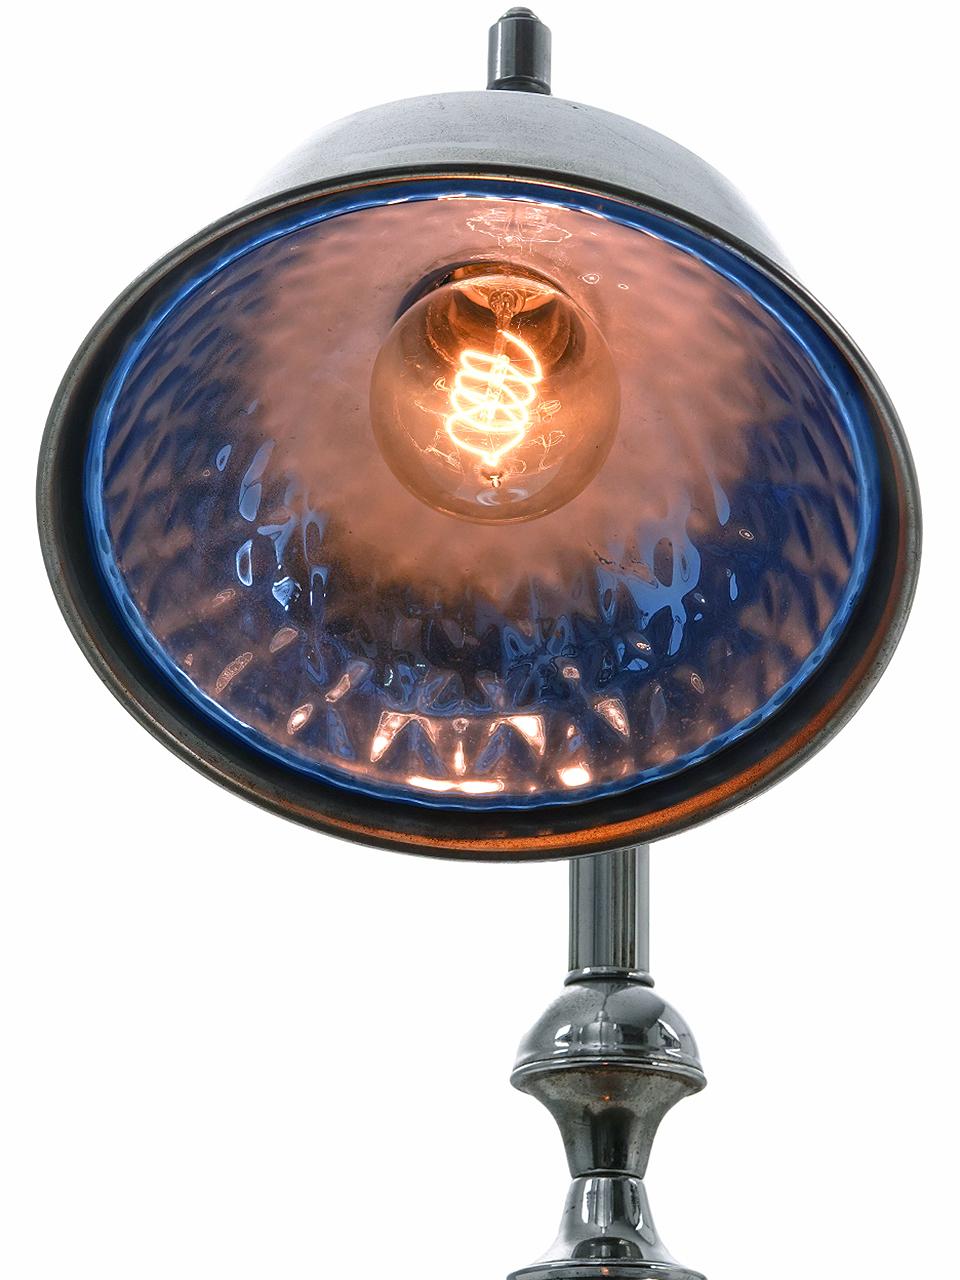 Il s'agit de lampes de table chromées de qualité industrielle. Ces lampes étaient très modernes pour les années 1920 et 1930. Elles ont un look Mid-Century Modern surprenant pour une lampe de plus de 90 ans. L'abat-jour généreux de 10 pouces de